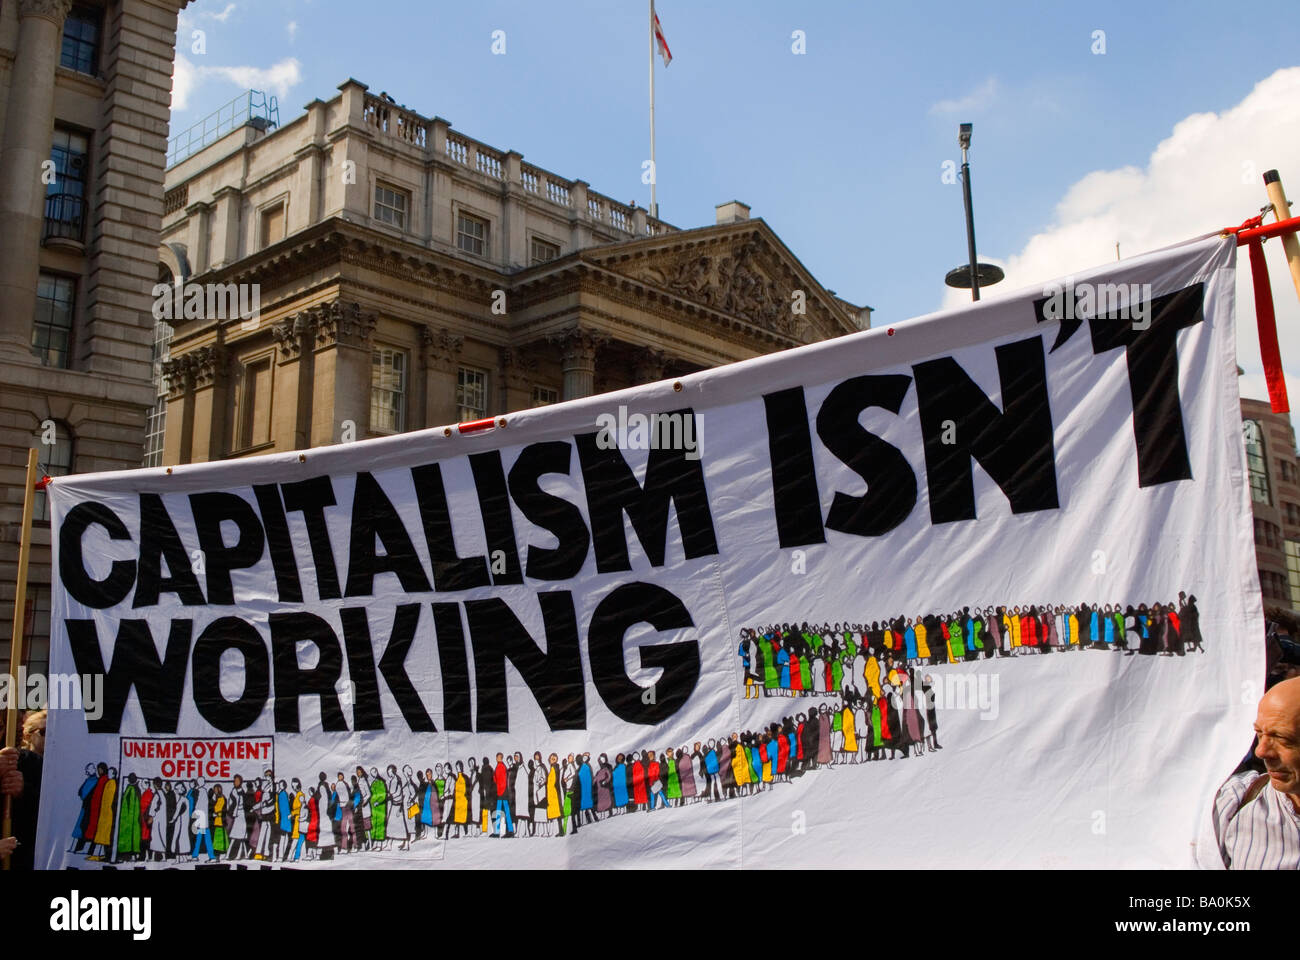 FINANZKRISE 2009 der Credit Crunch G20-Protest vor Bank of England Threadneedle Street London Großbritannien Europa der Kapitalismus funktioniert nicht im Vereinigten Königreich der 2000er Jahre Stockfoto